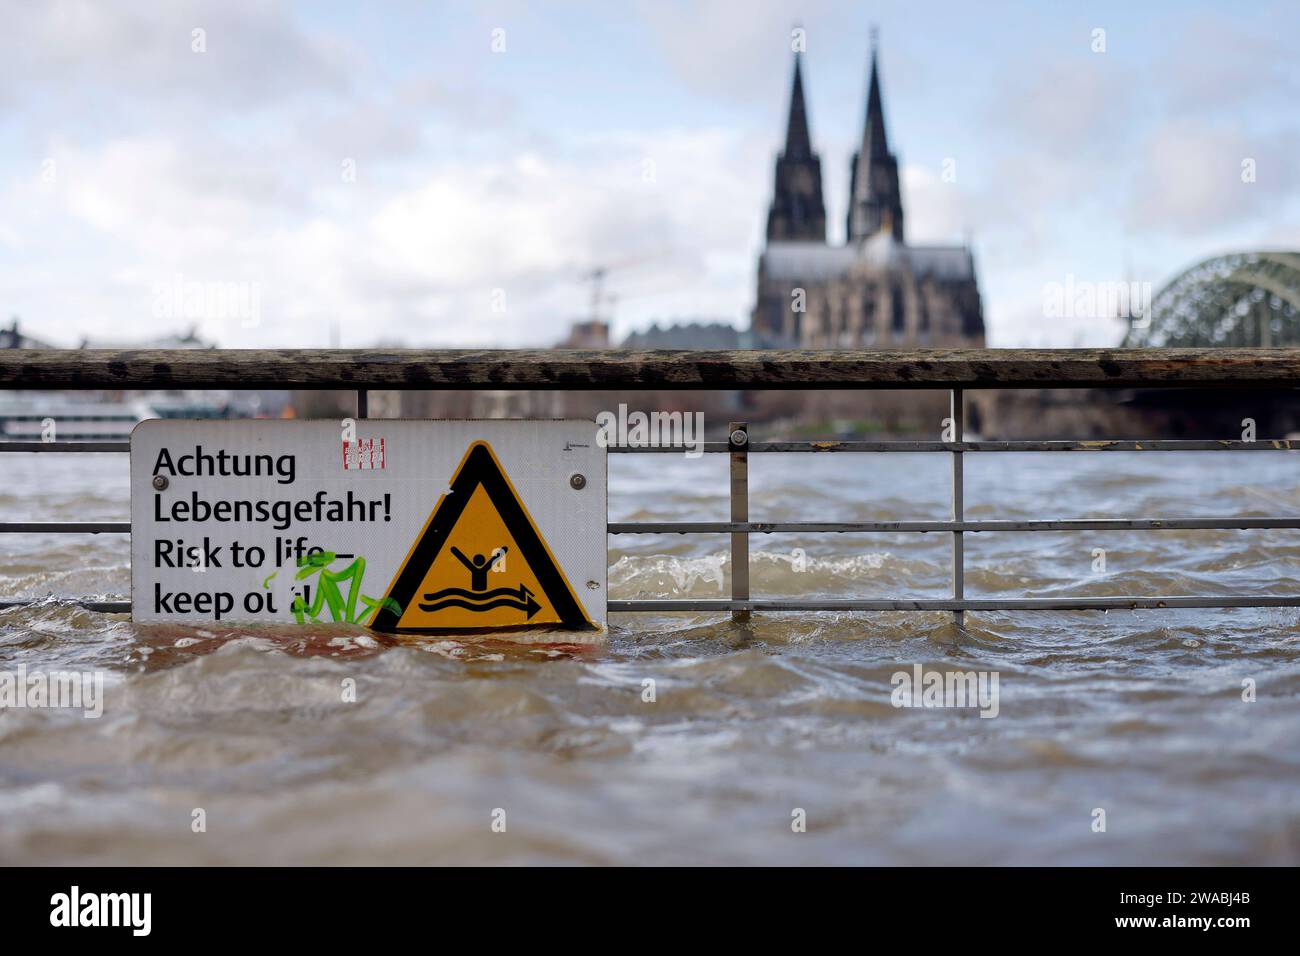 Impression vom Hochwasser in Köln am Ufer von Köln-Deutz: Am Ufer des Rhein sind Teile des Rheinboulevard, Gehwege und Wiesen überflutet. Absperrungen weisen auf Lebensgefahr bei Hochwasser Hin. DAS nasse Wetter Hat die Pegel von Bächen und Flüssen steigen lassen. Böden sind aufgeweicht und können kein weiteres Wasser fassen. für die kommenden Tage wird Dauerregen befürchtet. Themenbild, Symbolbild Köln, 03.01.2024 NRW Deutschland *** impressione delle inondazioni a Colonia sulle rive di Colonia Deutz sulle rive del Reno, parti del RheinBoulevard, sentieri e prati sono allagati Bar Foto Stock